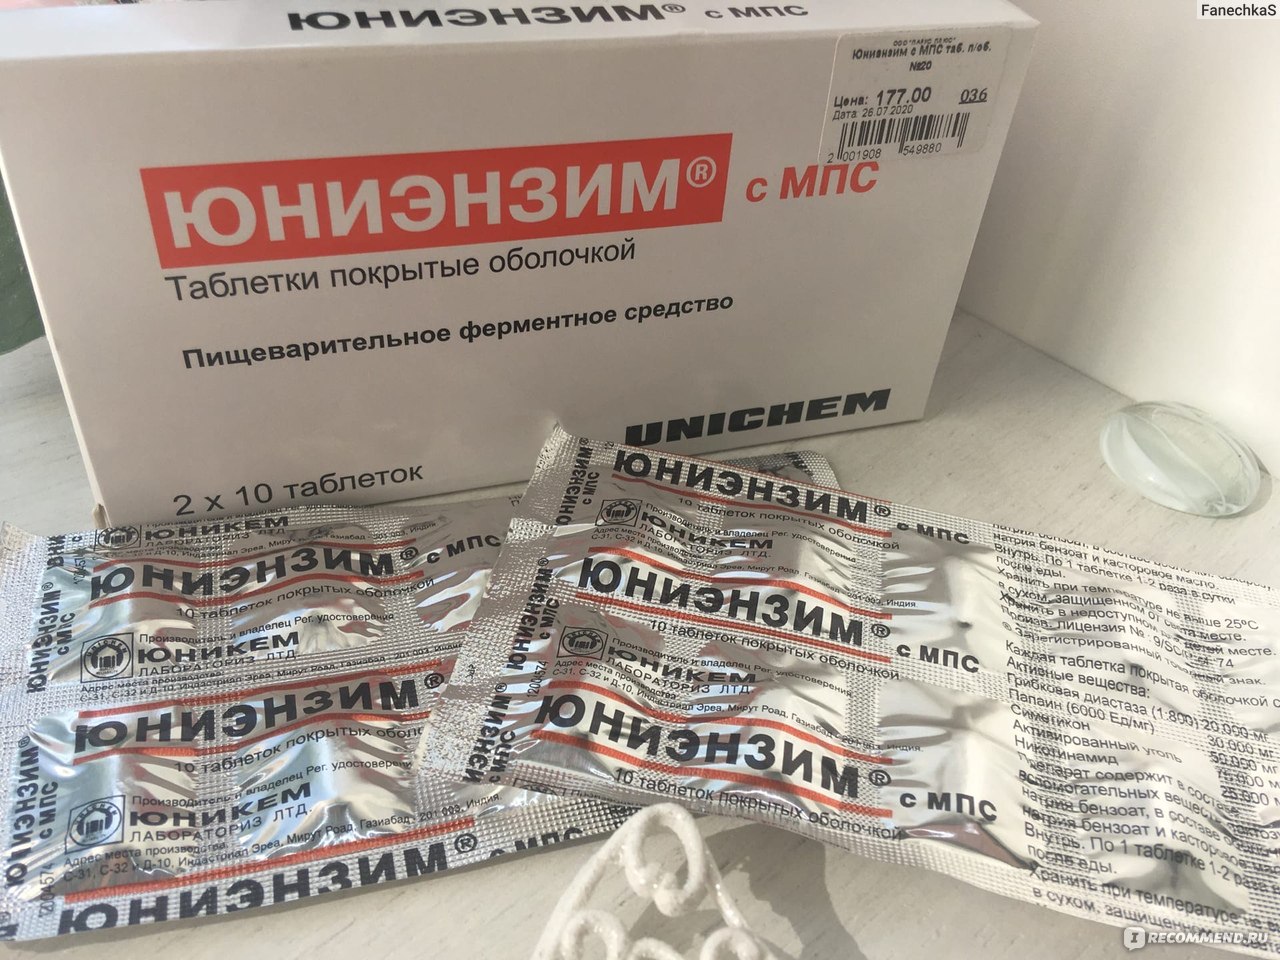 Таблетки Юниэнзим с МПС - «Мой любимый и незаменимый препарат для .